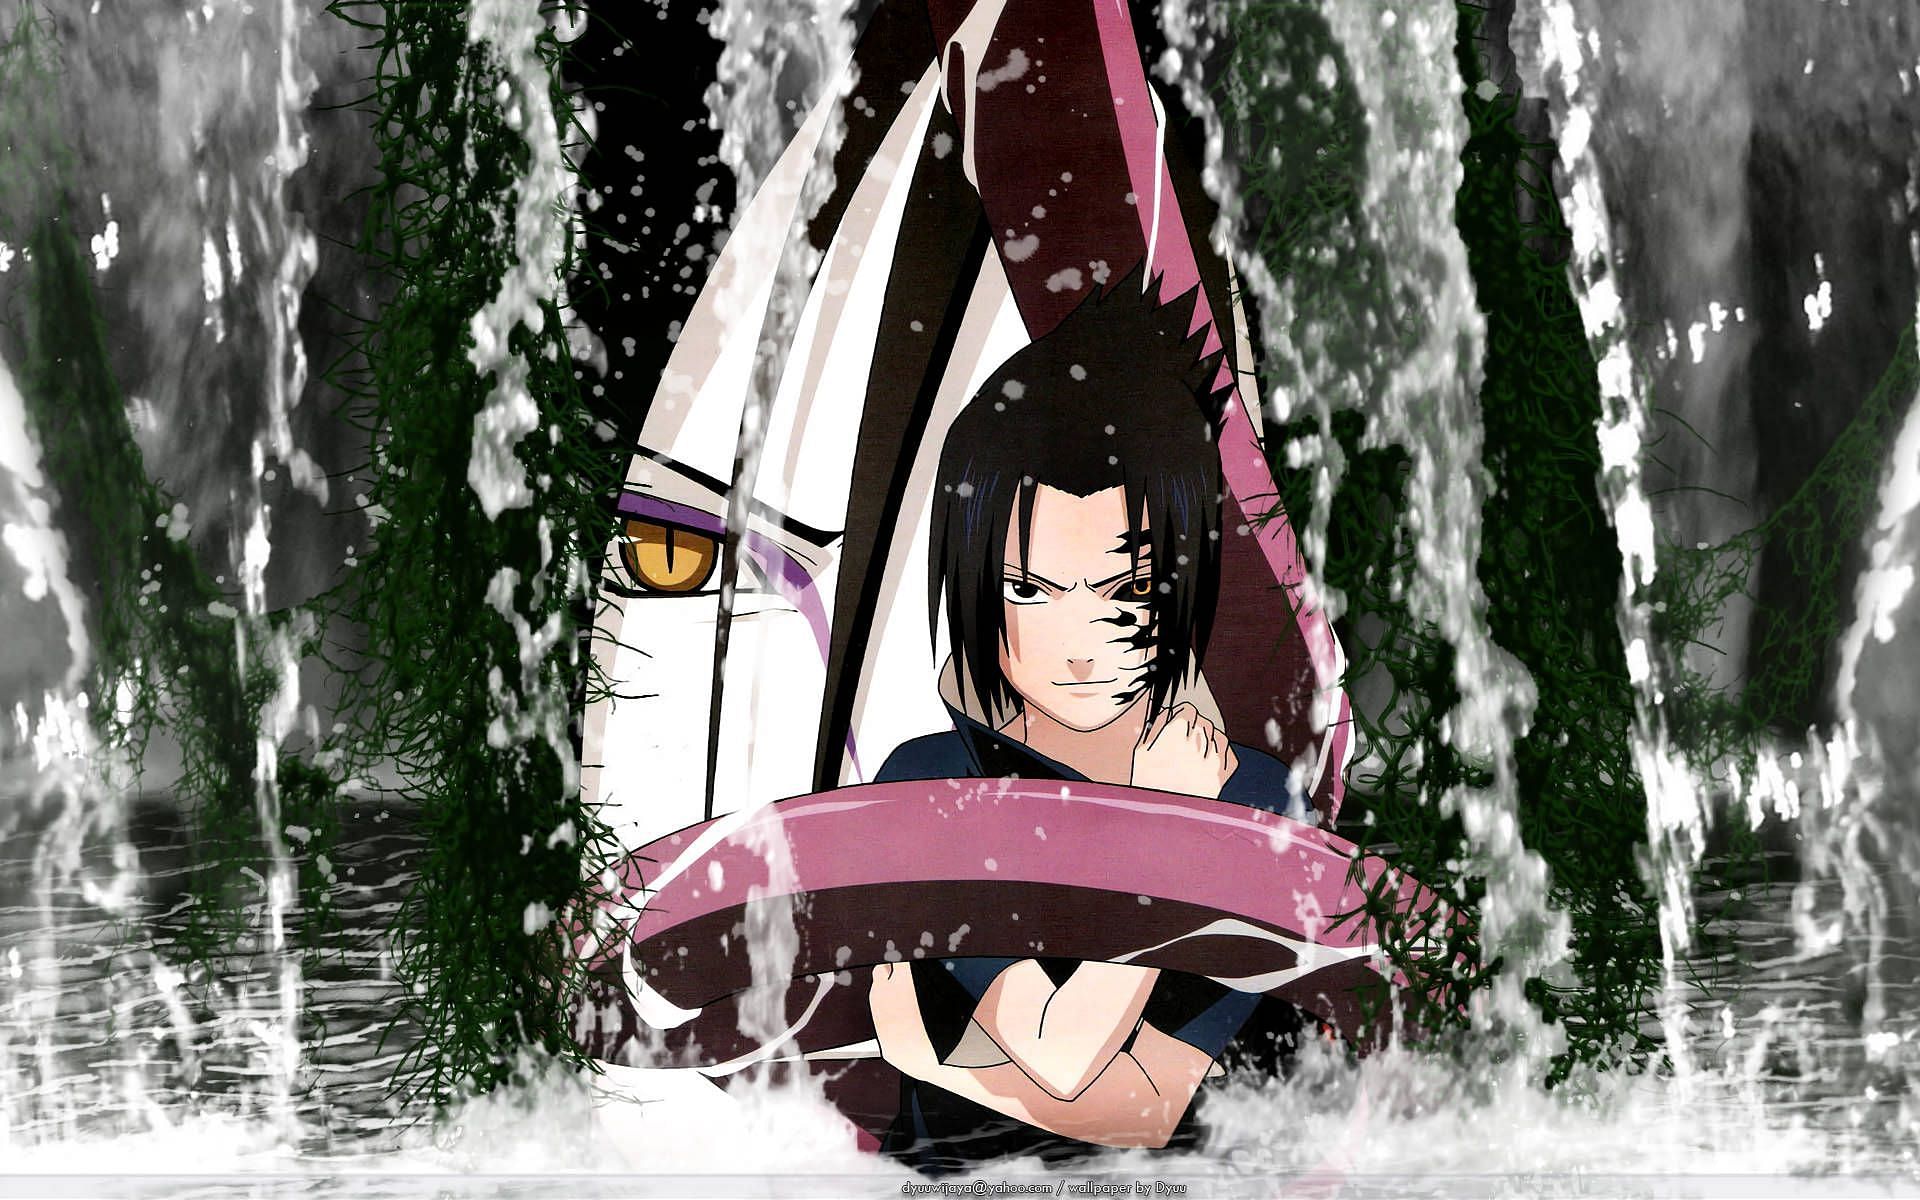 Orochimaru & Sasuke (image via Studio Pierrot)